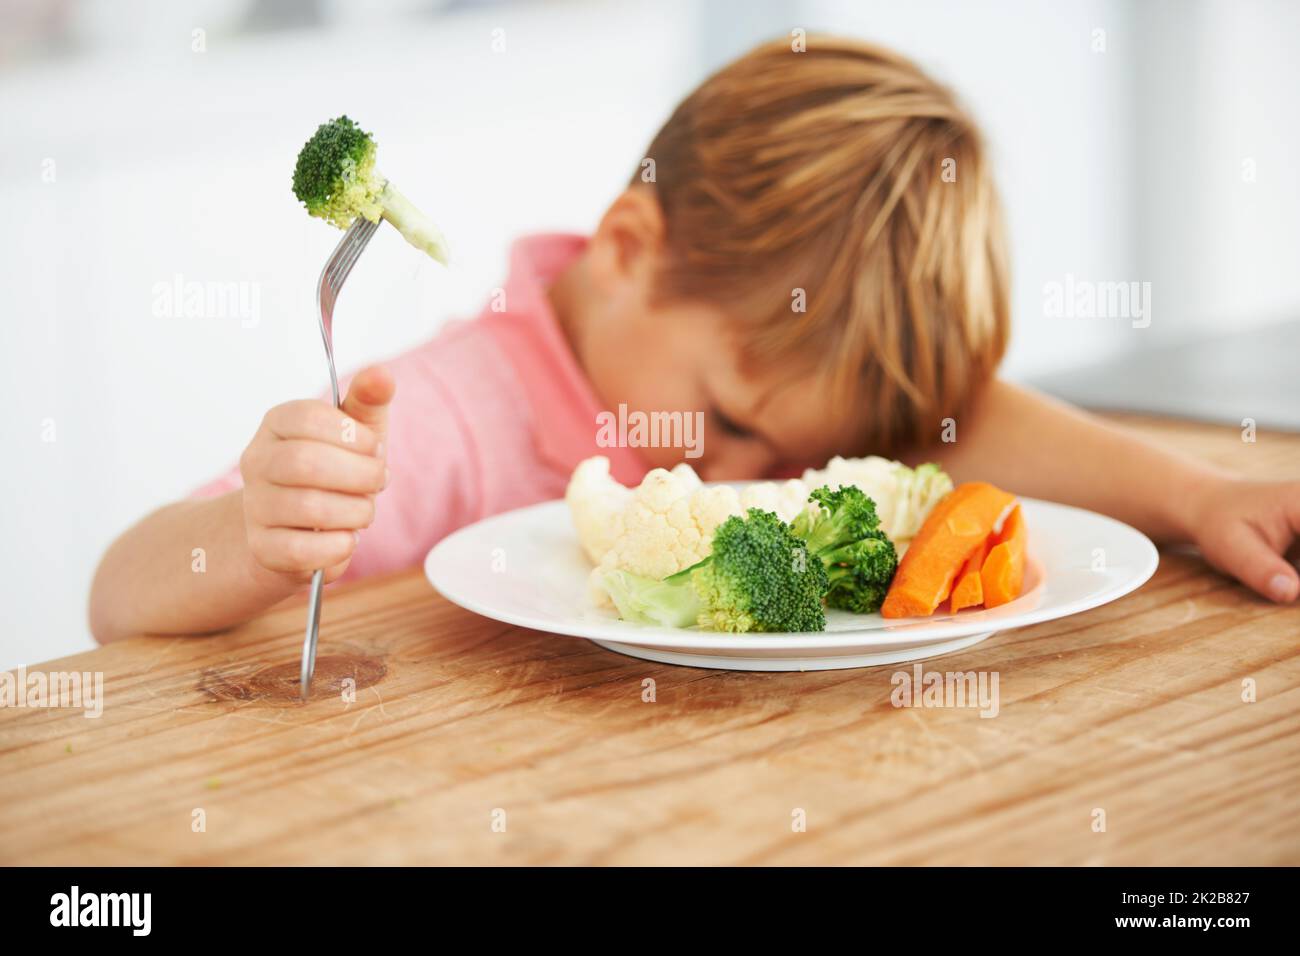 Tout sauf le brocoli Un petit garçon très mécontent d'avoir à manger des légumes. Banque D'Images